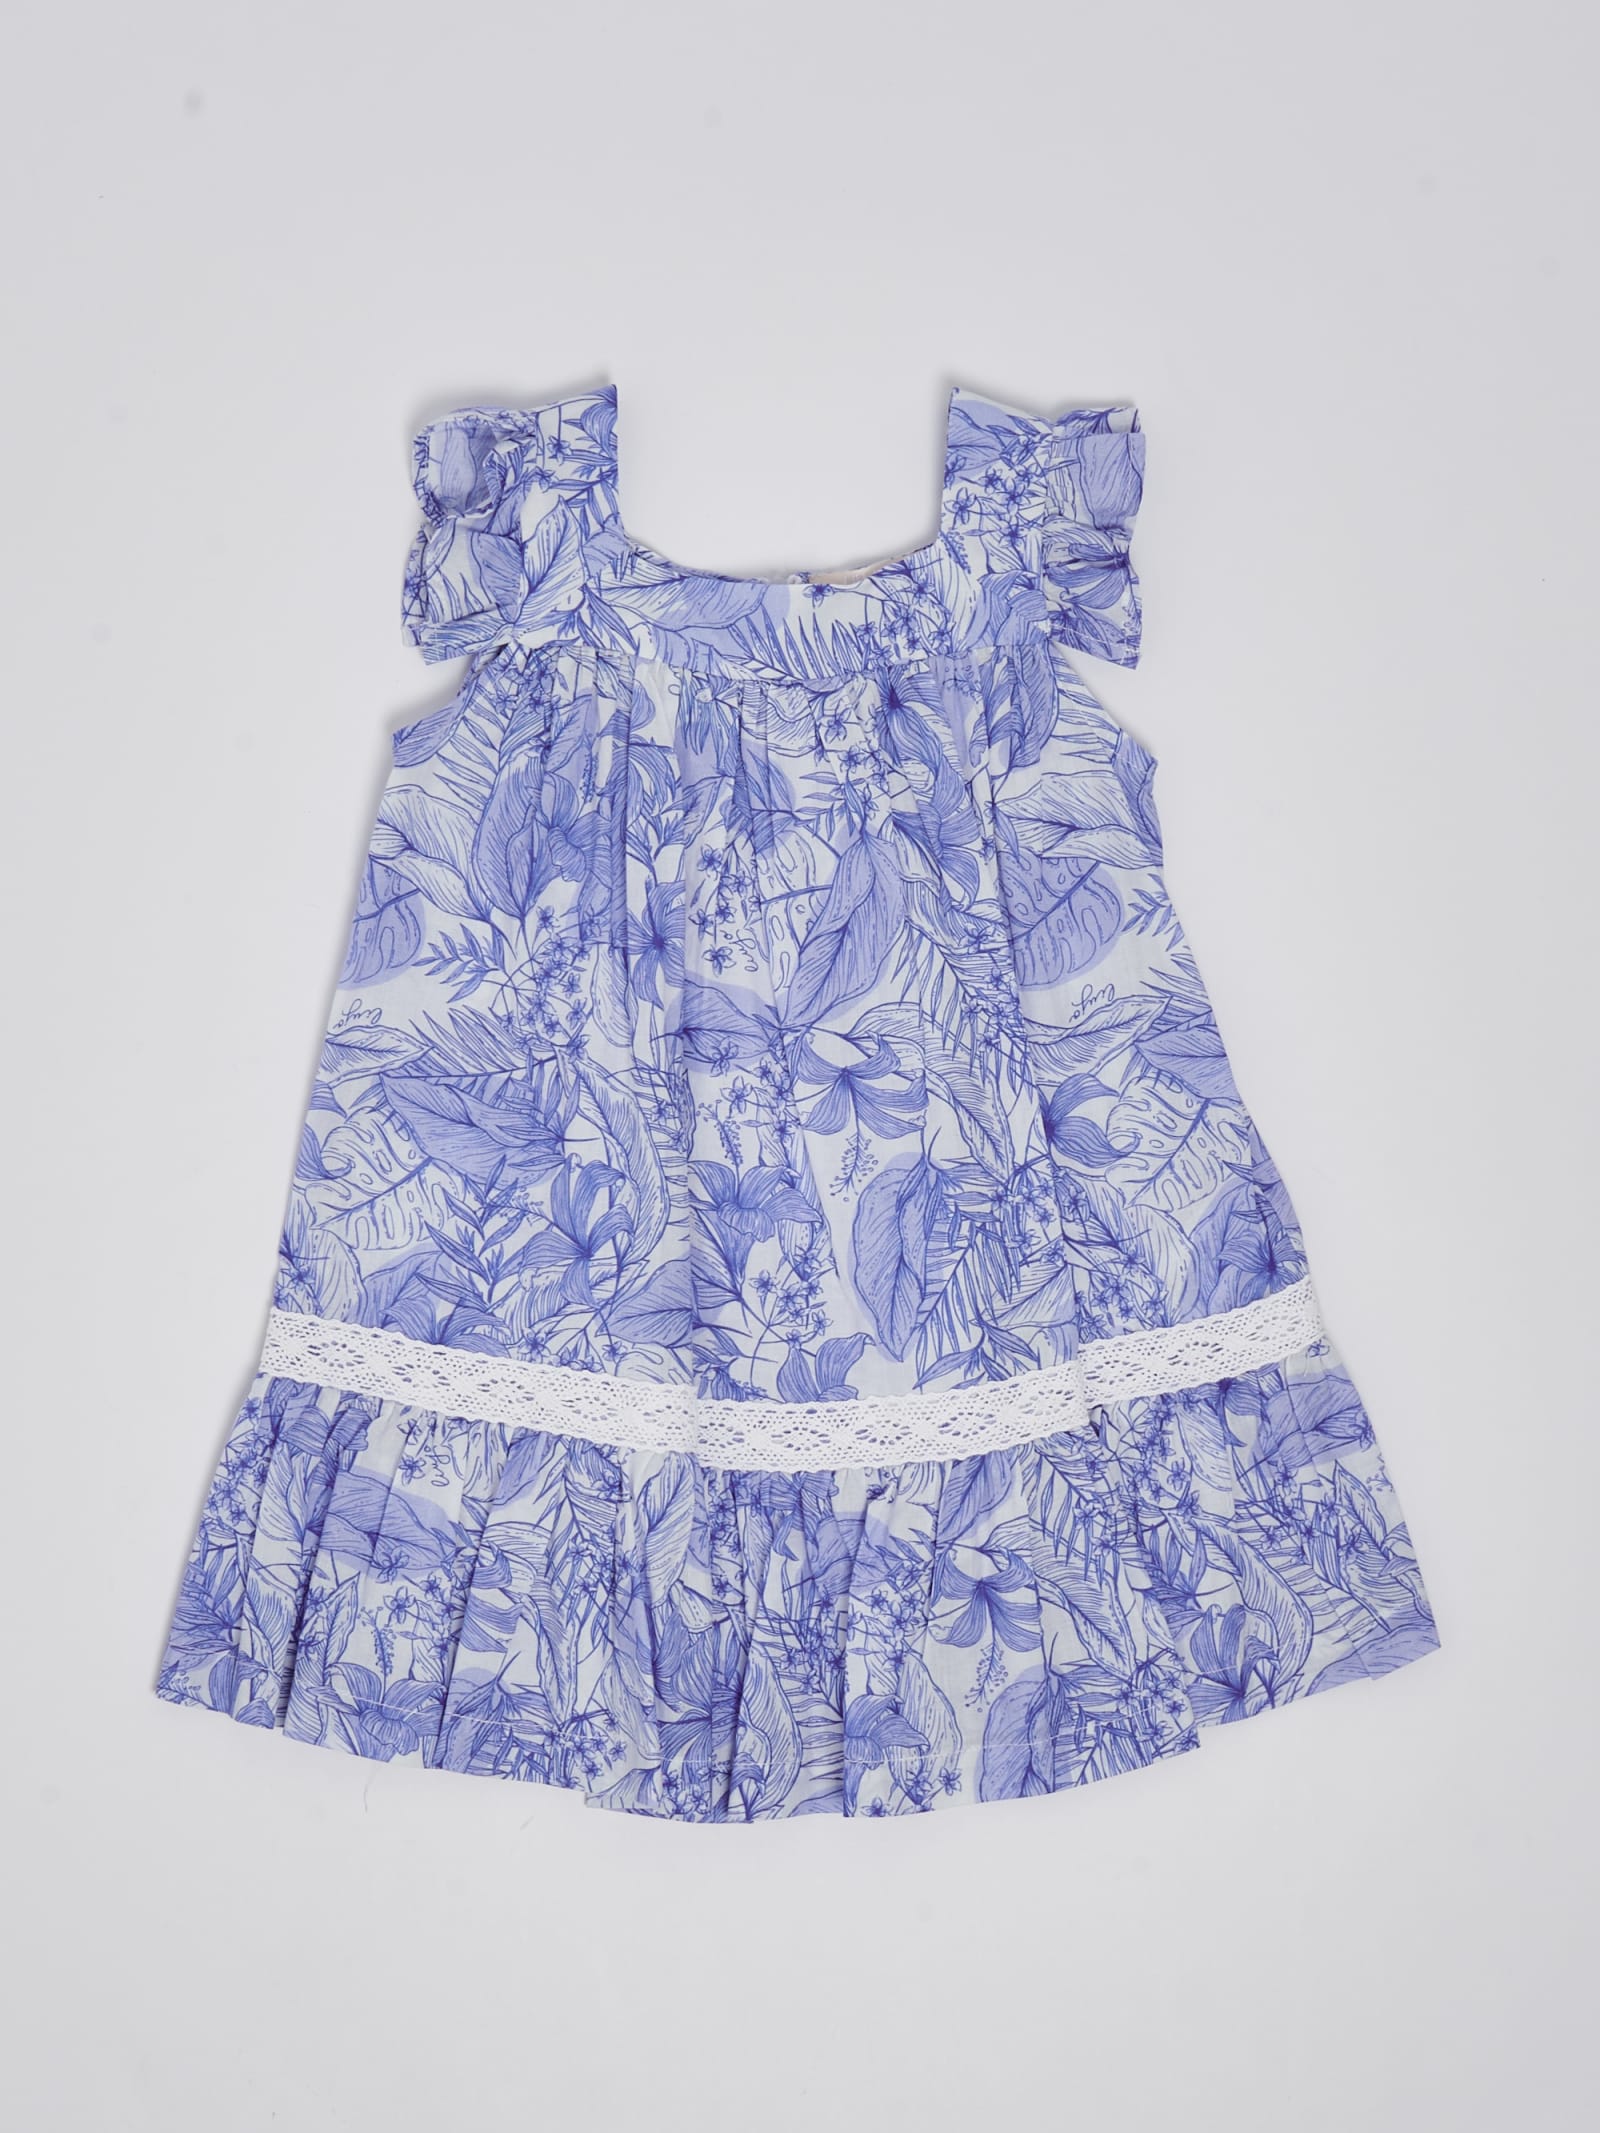 Liu •jo Kids' Dress Dress In Azzurro-bianco